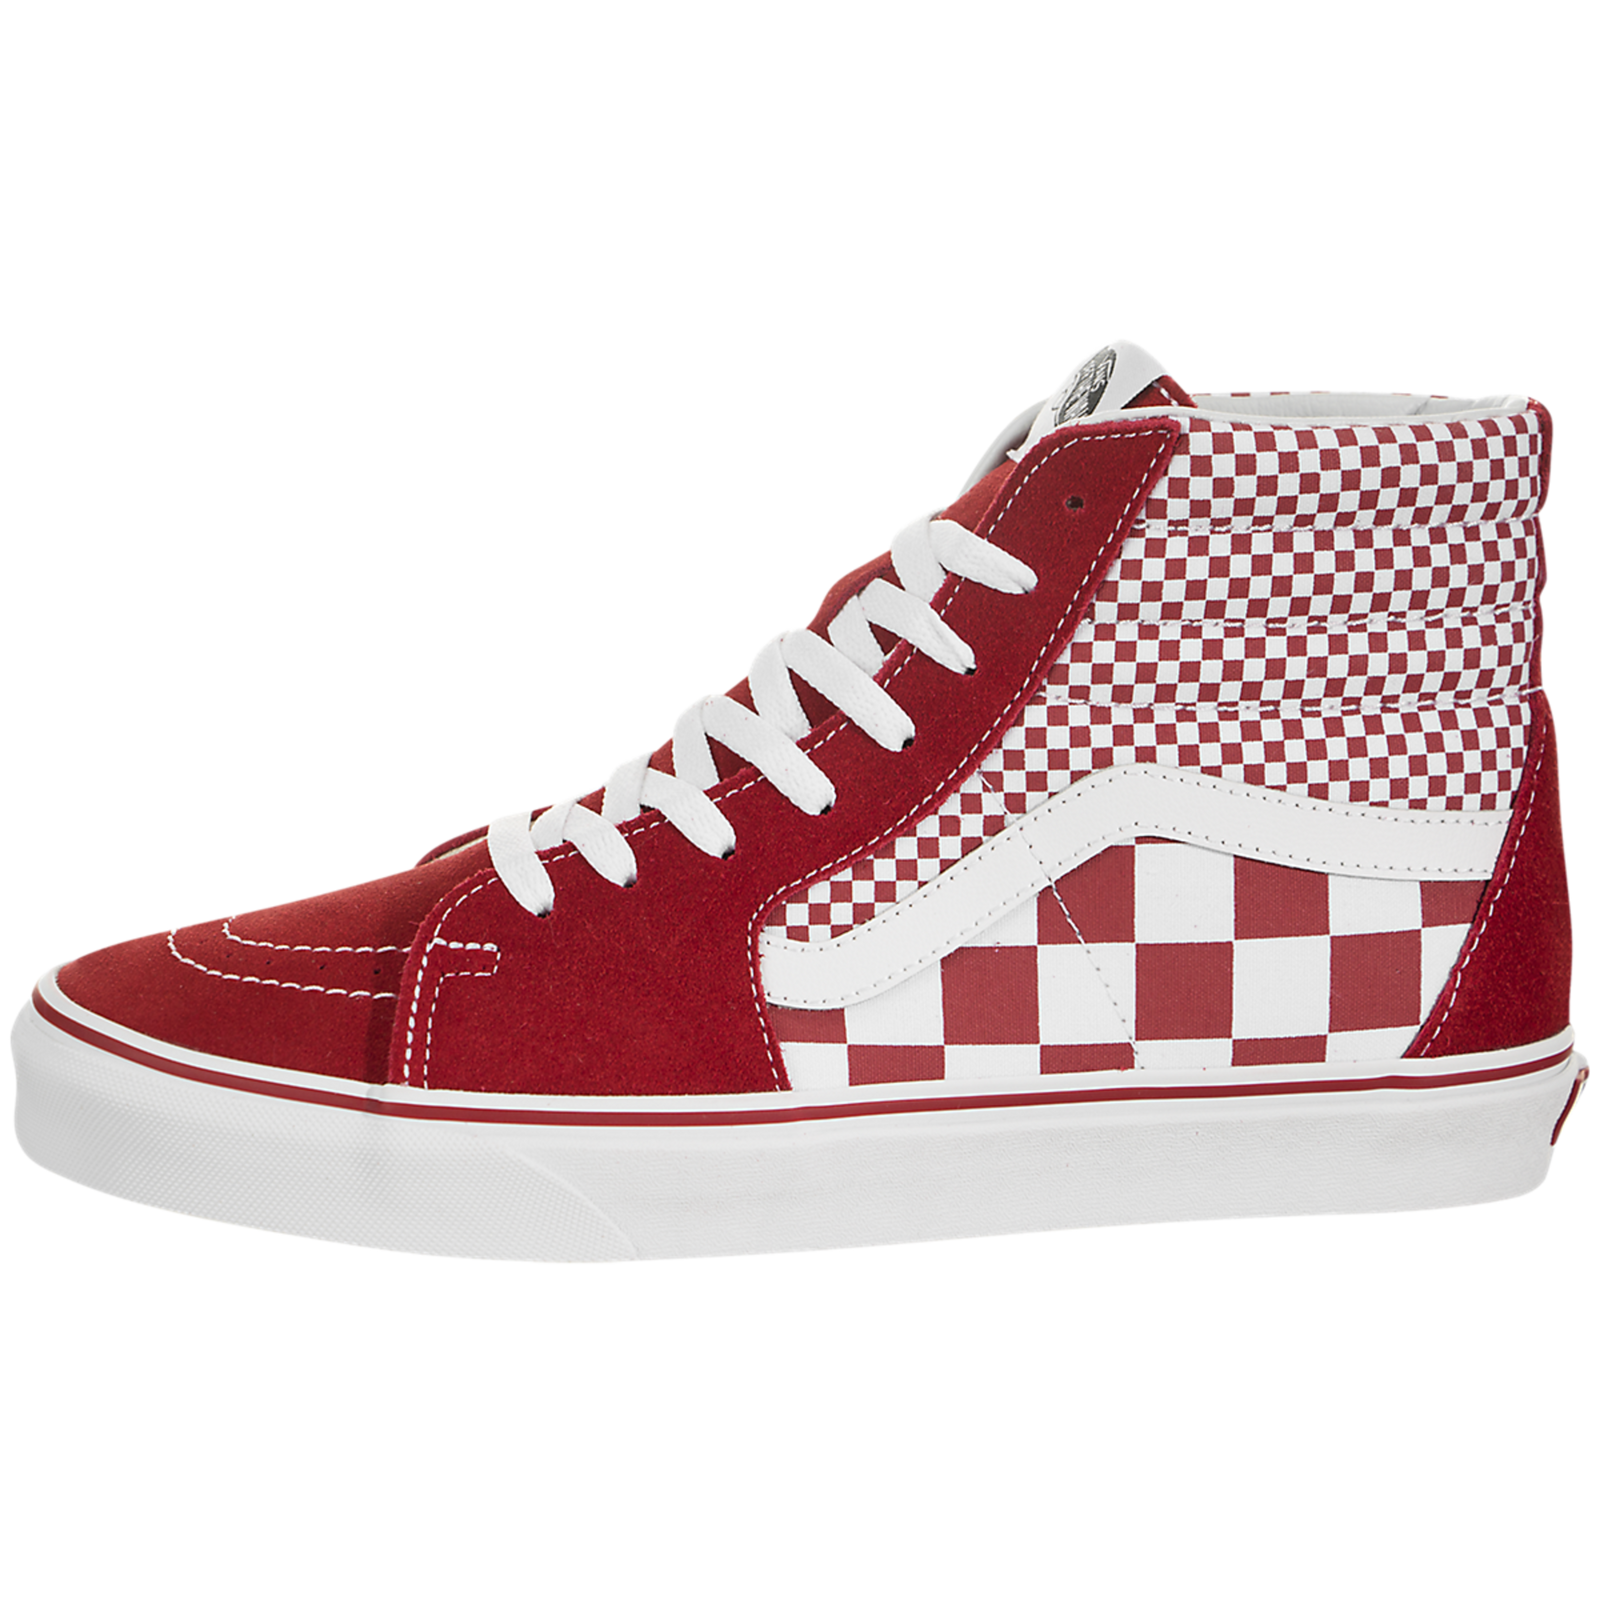 Vans Sk8-Hi (Mix Checker) - vn0a38gevk5 - Sneakerhead.com – SNEAKERHEAD.com